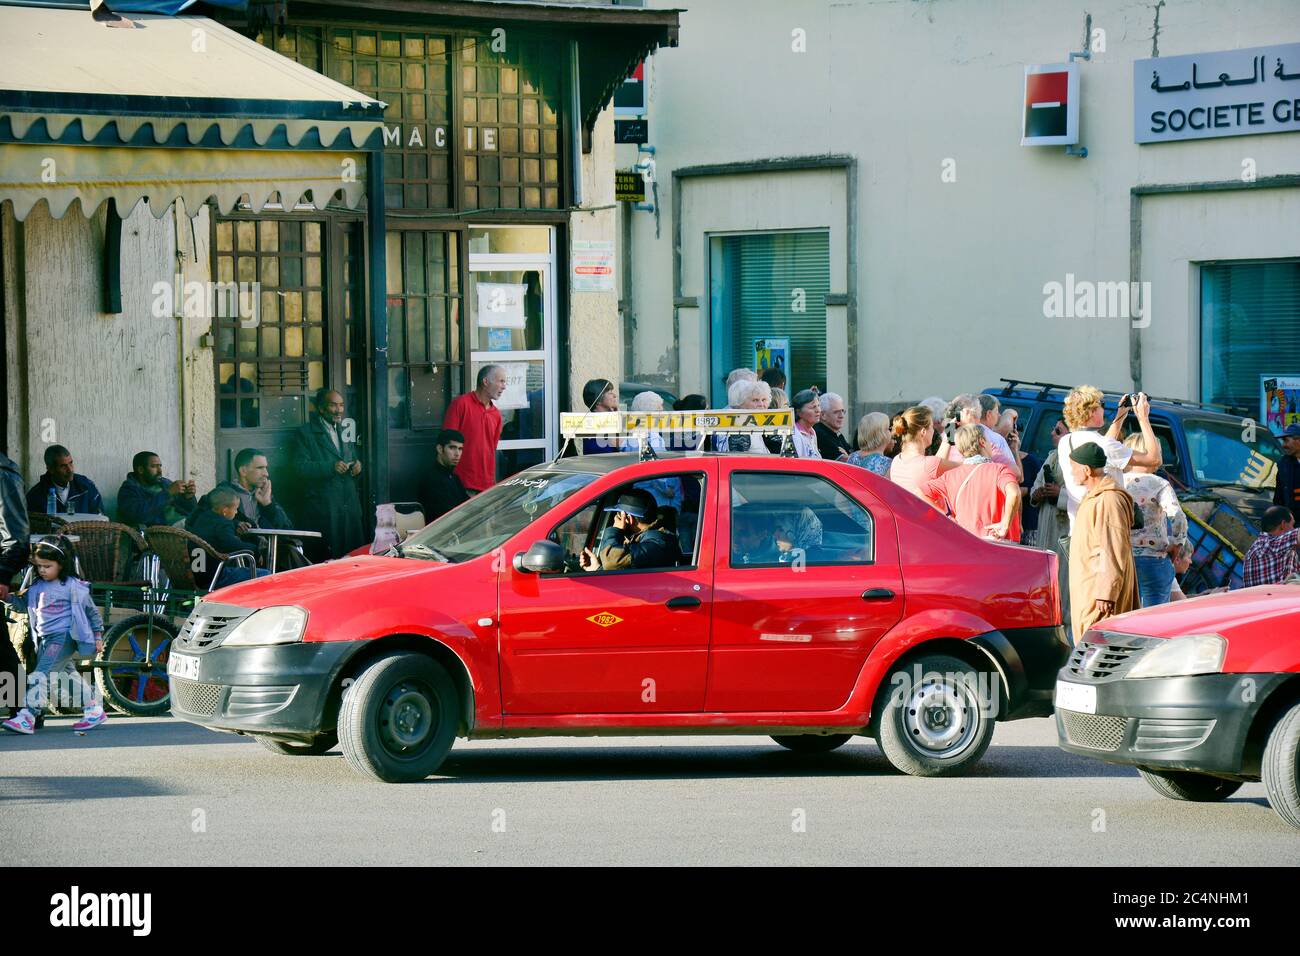 FES, Maroc - 20 novembre 2014: Les personnes non identifiées et Red petit taxi - un mode traditionnel de transport jusqu'à quatre personnes, chaque ville en avait une autre Banque D'Images